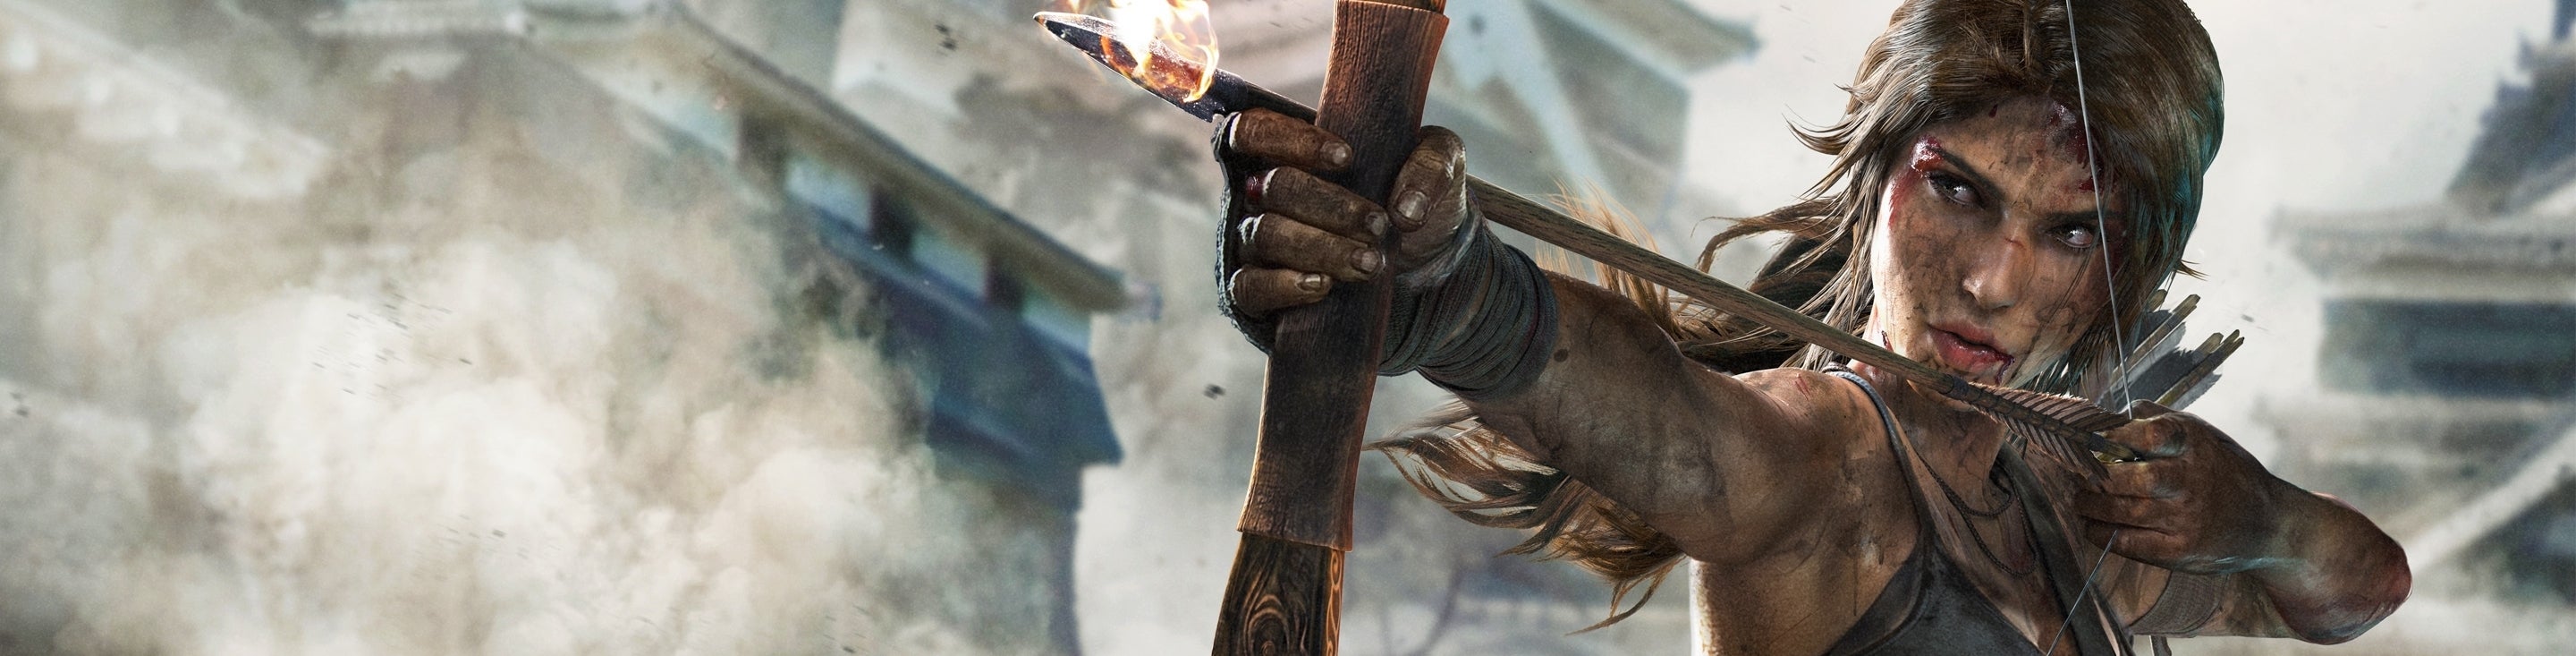 Bilder zu Performance-Analyse: Tomb Raider: Definitive Edition